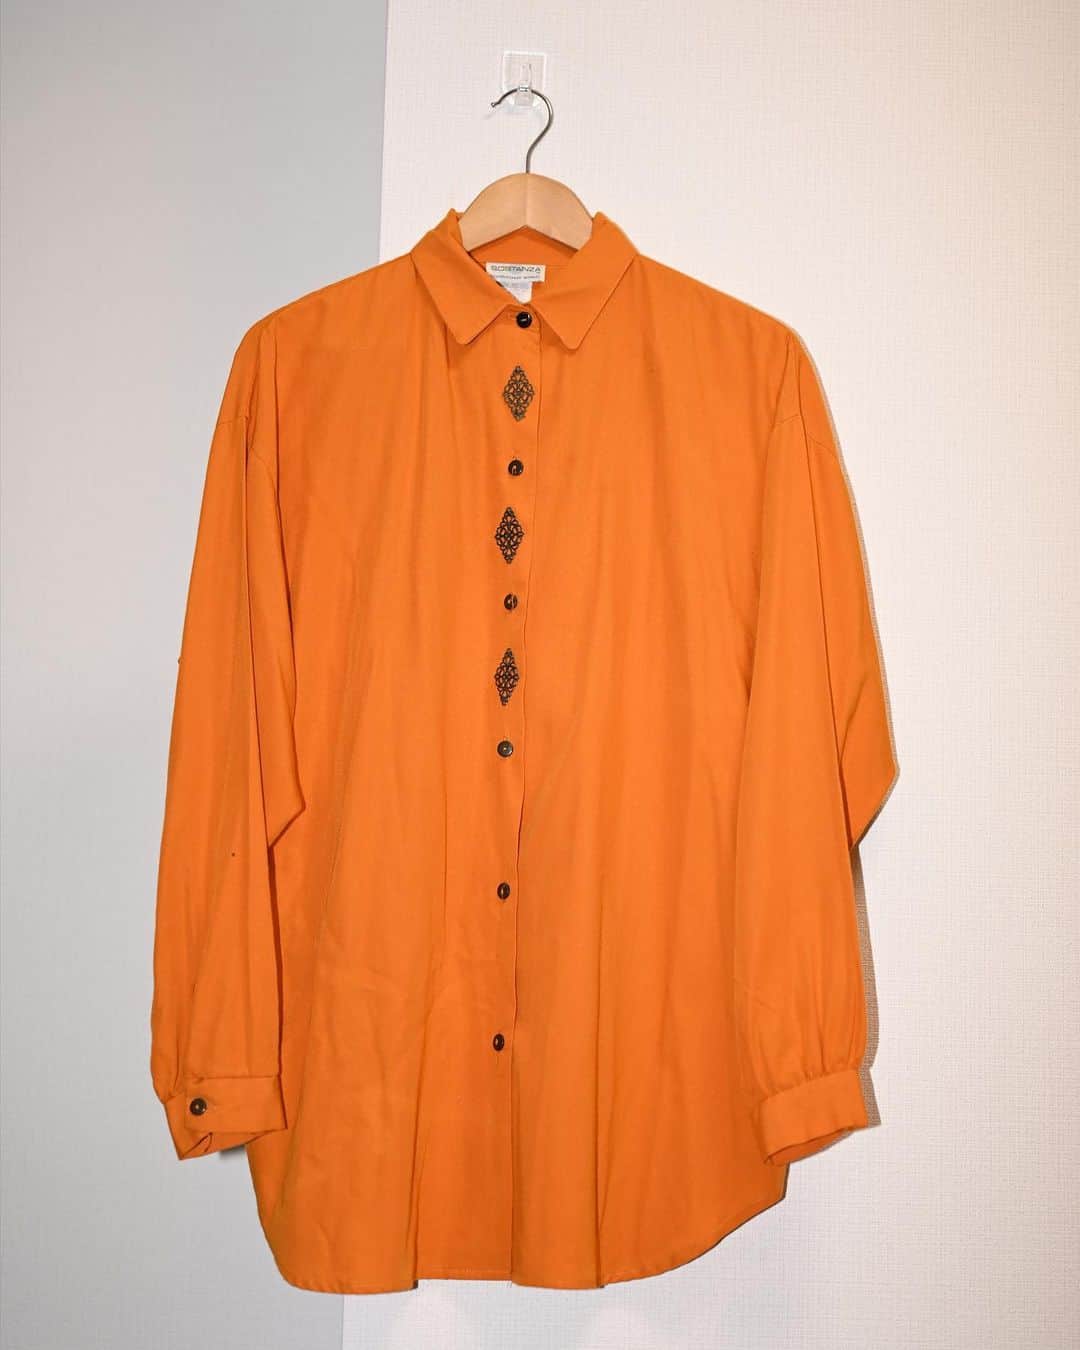 岩田華怜のインスタグラム：「#岩田華怜フリーマーケット 商品紹介⚡️  出品者 #岩田華怜 🌸 出品者コメント「このシャツは、原宿の古着屋さんで購入したものです！明るい色味とボタンのところの装飾にとても惹かれました。着やすく、シルエットも美しく見えます。ちょうどこのシャツを購入したタイミングでコロナが明けて、２つのオーディションにポンポンっと合格したのを覚えています😆私に取っての福の神です❤️‍🔥」  #岩田華怜 #渡邉聖斗 #橋本菜摘 #岡部雄馬 #デルフィー #スコーピウス #ローズ #クレイグ #フリーマーケット #舞台ハリポタ #舞台ハリーポッターと呪いの子 #harrypotterandthecursedchild⚡️#akb48 #akb #てれび戦士 #天才てれびくん #天才てれびくんmax #古着屋さん #古着 #原宿 #表参道 #原宿古着 #原宿古着屋巡り #ファッション #アパレル #コーディネート   【商品タグカラー】 岩田華怜→ピンク🌸 渡邉聖斗→黒🐾 橋本菜摘→緑🍀 岡部雄馬→オレンジ🍊」